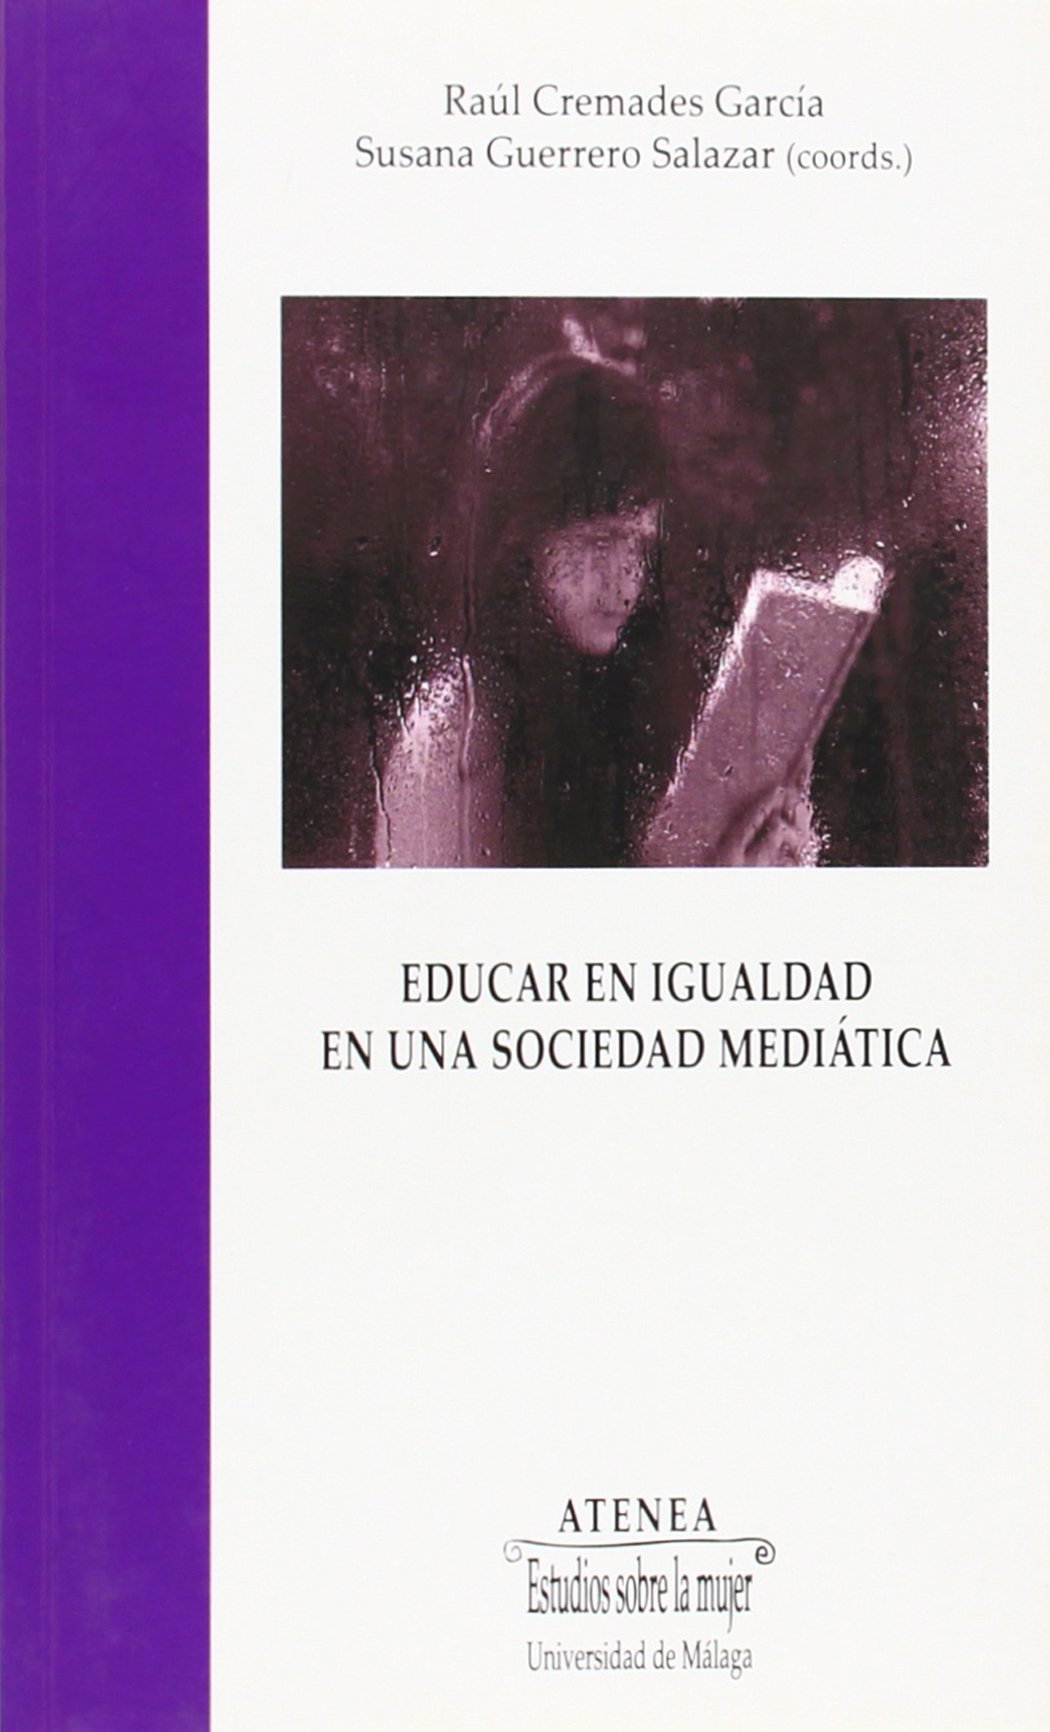 Imagen de portada del libro Educar en igualdad en una sociedad mediática